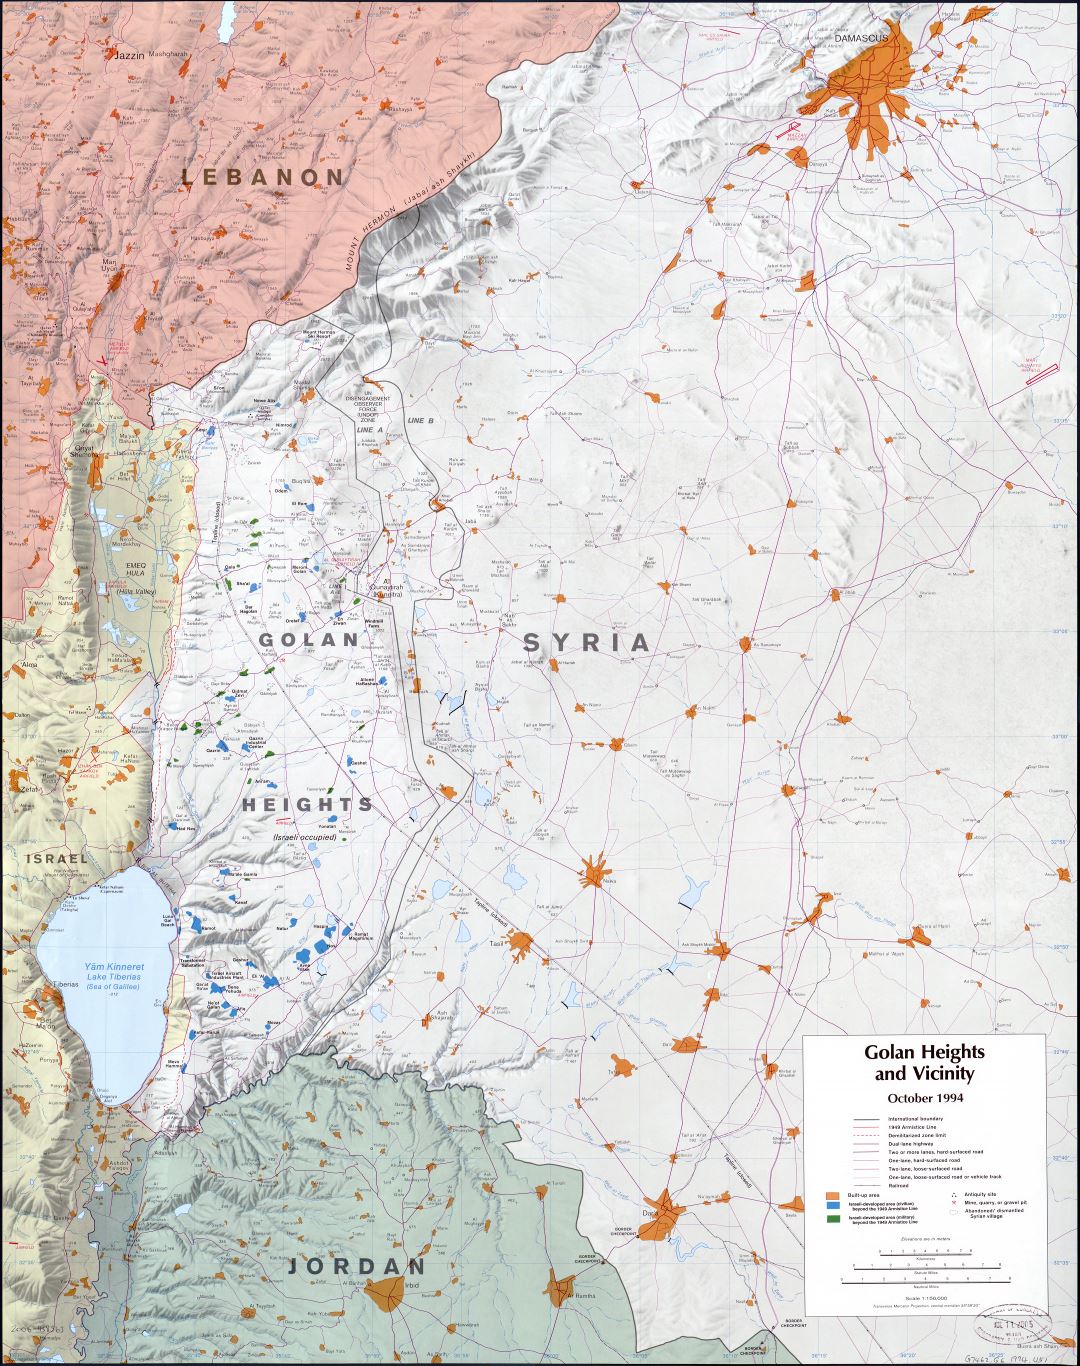 Крупномасштабная карта Голанских высот и окрестностей с рельефом и другими пометками - 1994